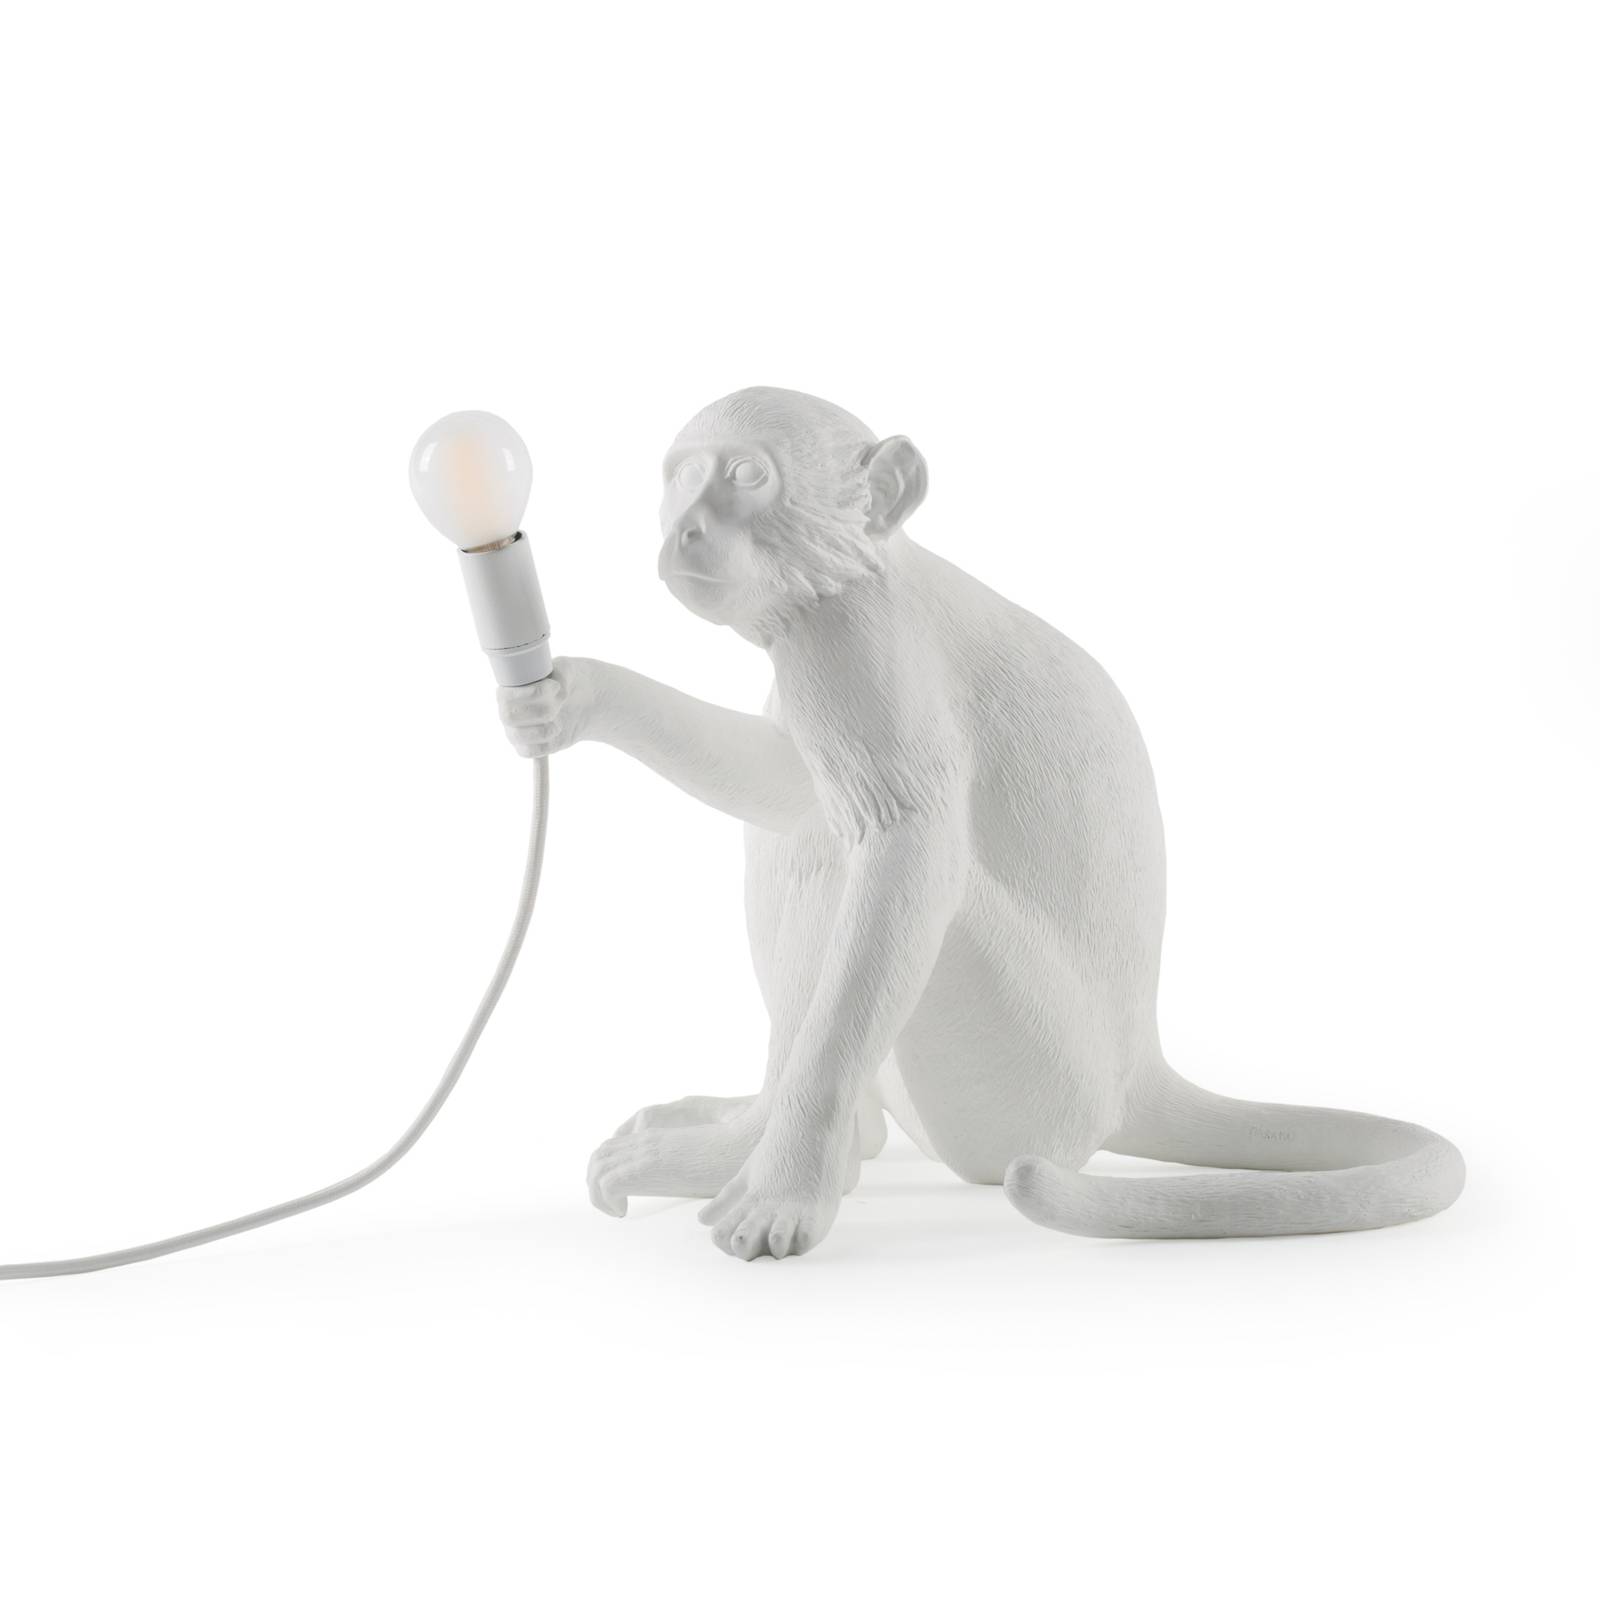 Seletti led dekor asztali lámpa monkey lamp, fehér, ülő